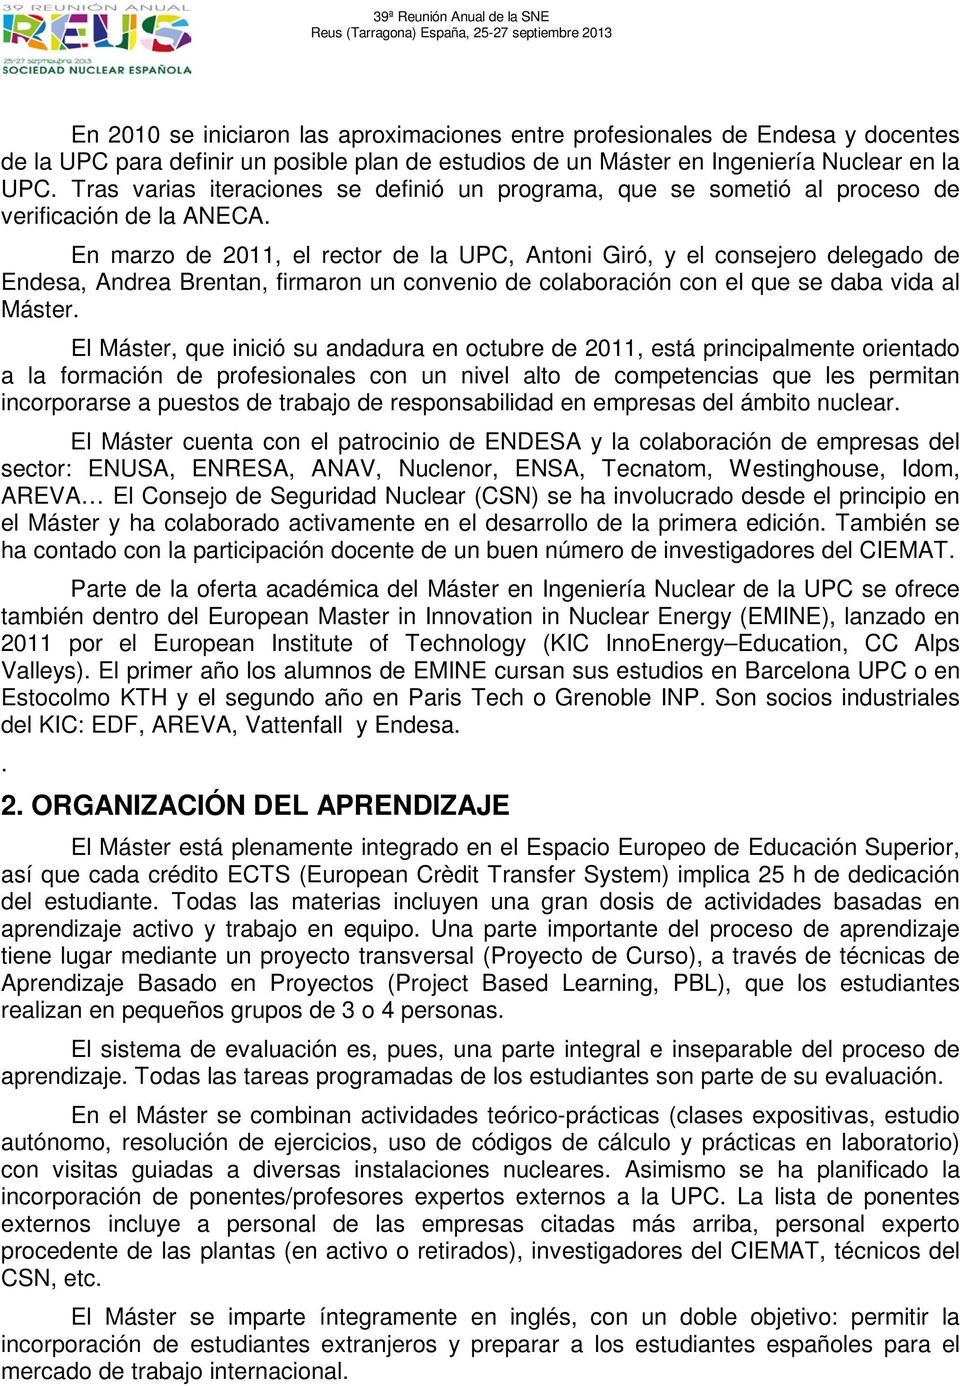 En marzo de 2011, el rector de la UPC, Antoni Giró, y el consejero delegado de Endesa, Andrea Brentan, firmaron un convenio de colaboración con el que se daba vida al Máster.